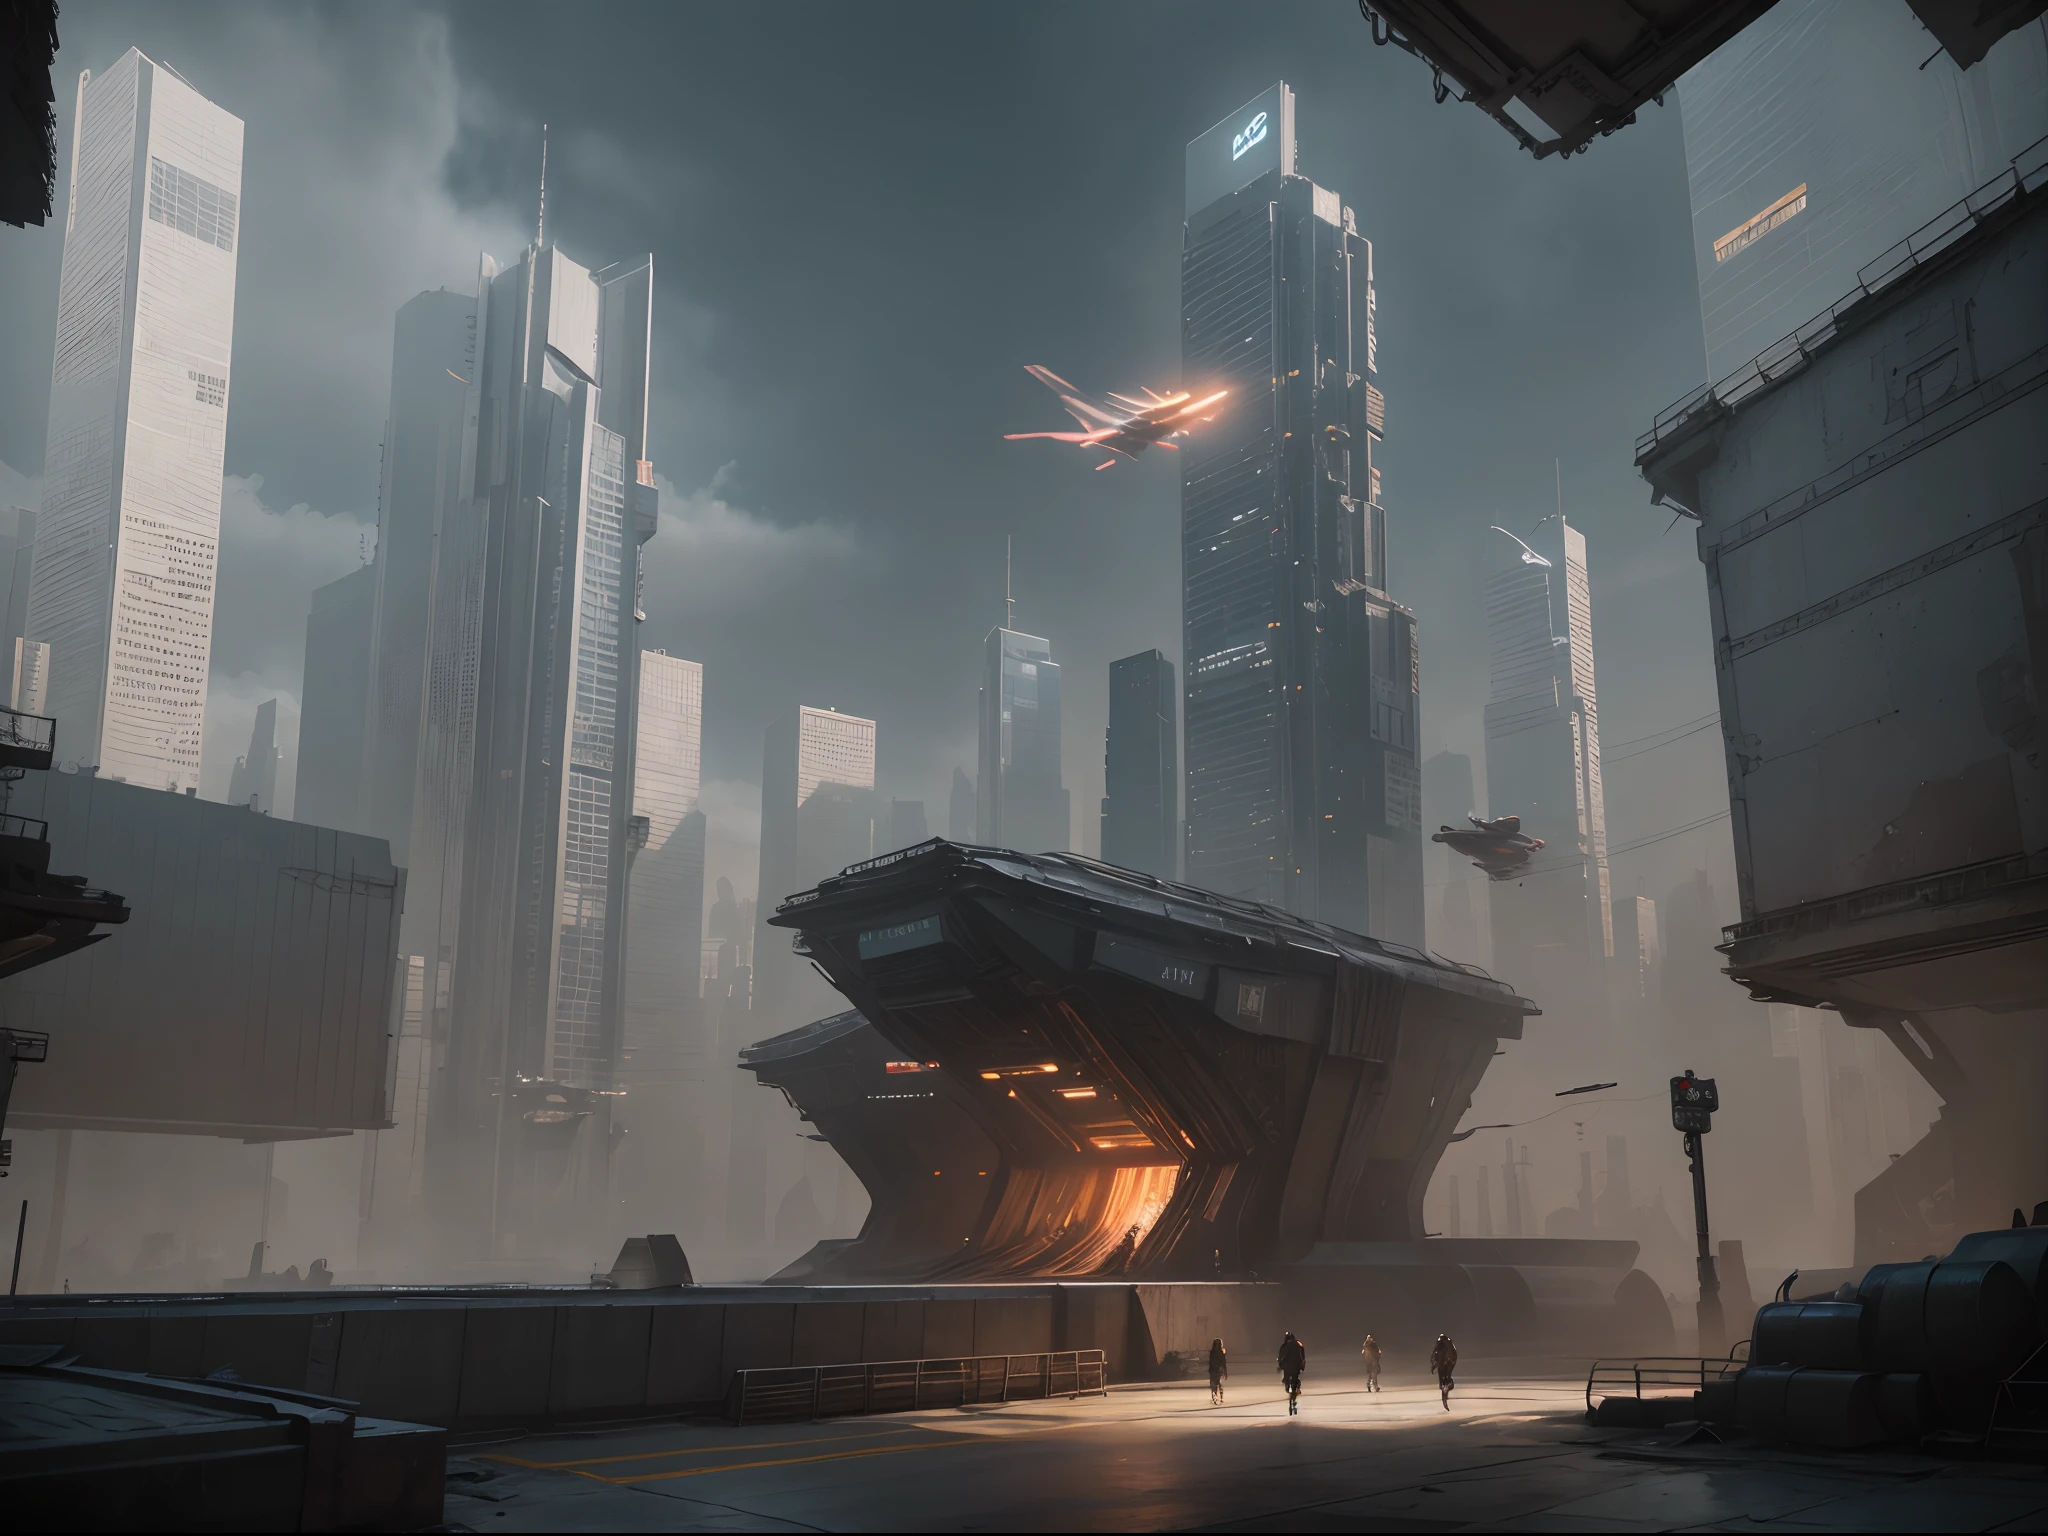 ภูมิทัศน์เมือง Cyberpunk พร้อมตึกระฟ้าสูงตระหง่าน, ป้ายไฟนีออน, และรถบินได้.